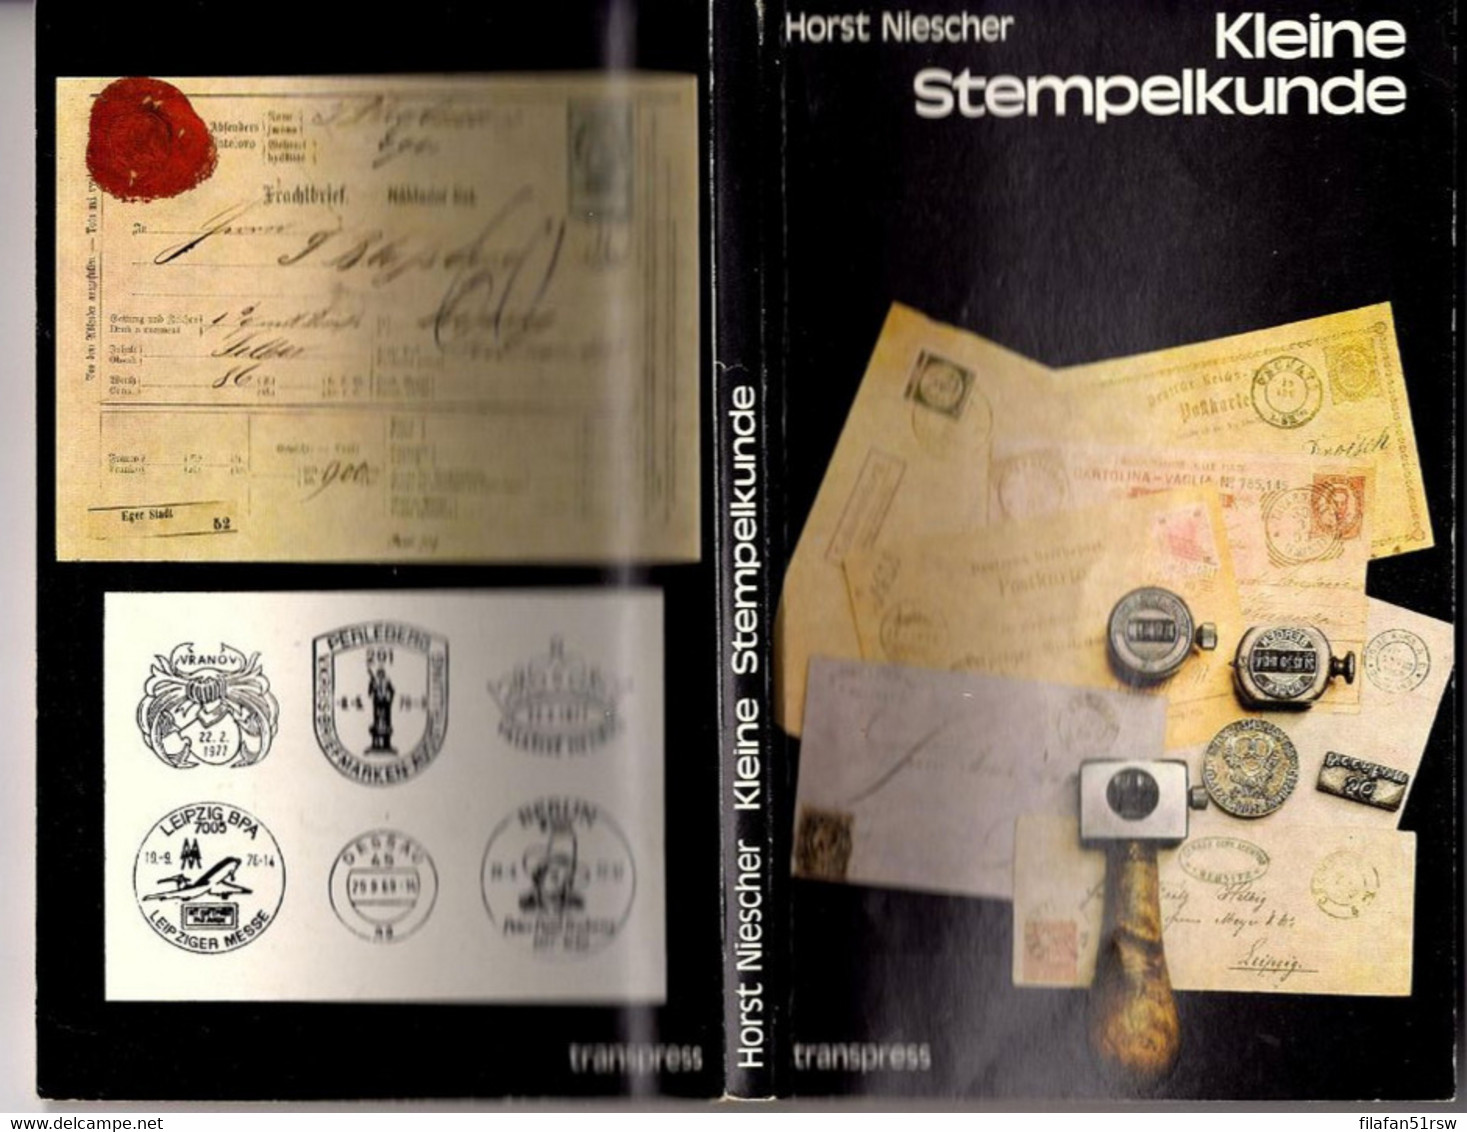 Kleine Stempelkunde, 1. Auflage, Horst Niescher, 162-925/197/84 Transpress, 1984, - Stempel